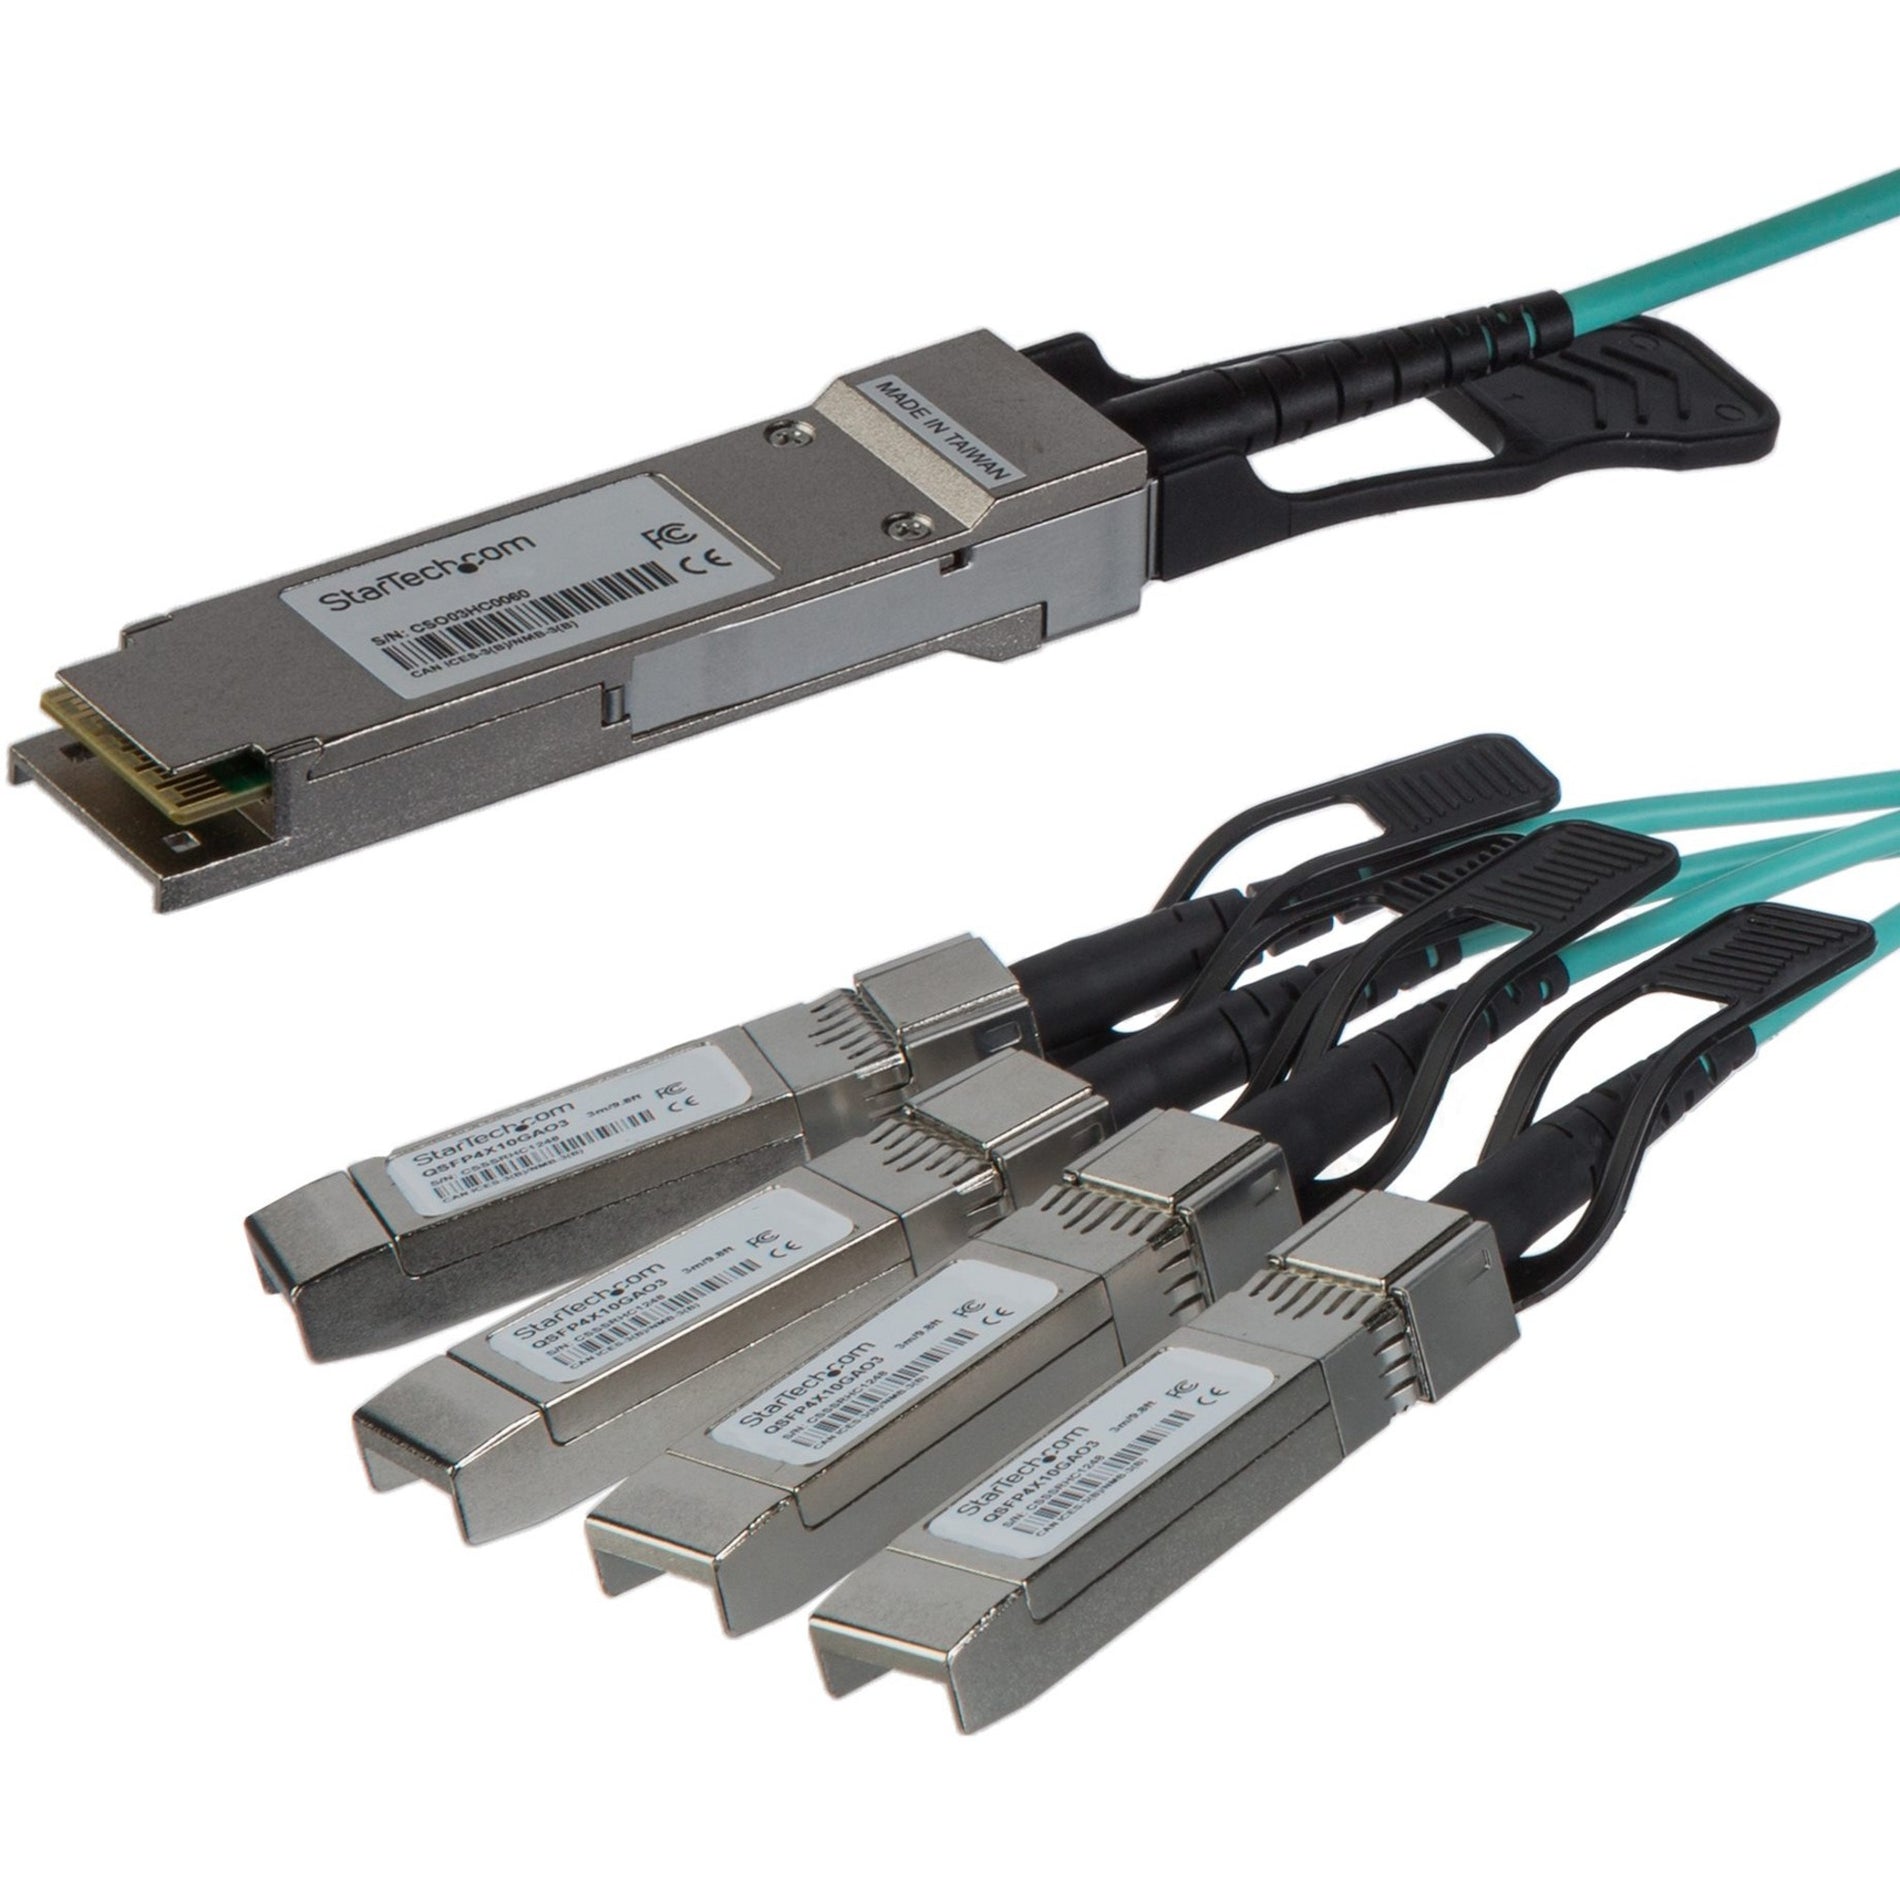 StarTech.com QSFP4X10GAO3 QSFP+ to 4x SFP+ - 3 m (9.8 ft.) Network Cable Active Hot-swappable Flexible  스타테크닷컴 QSFP4X10GAO3 QSFP+에서 4개의 SFP+로 - 3m (9.8 ft) 네트워크 케이블 활성 핫-스왑 가능 유연